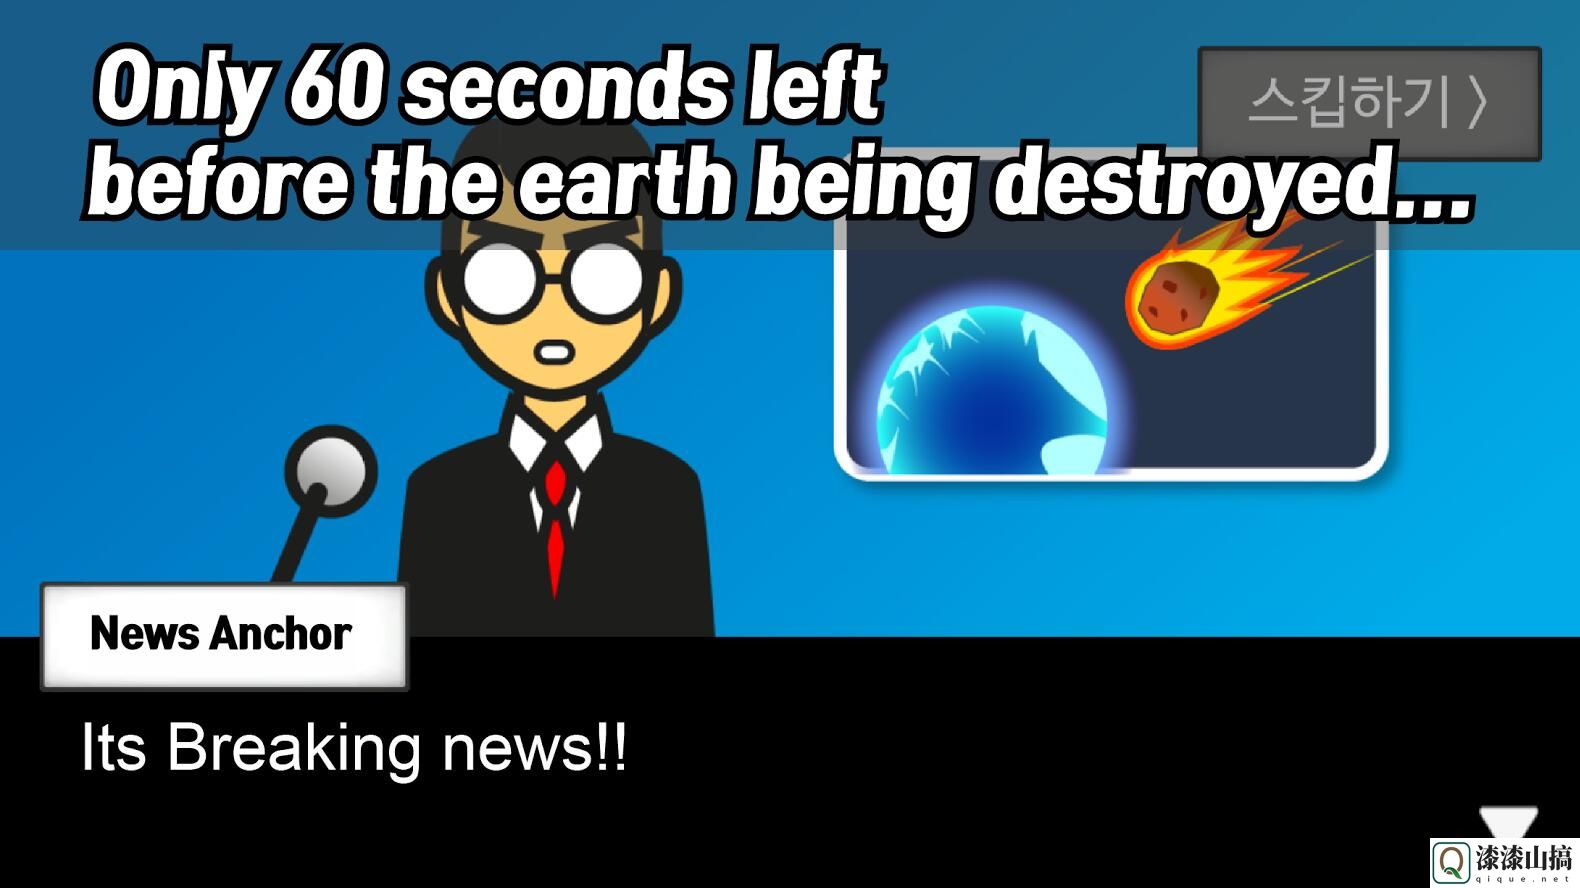 地球灭亡前60秒Meteor 60 seconds!